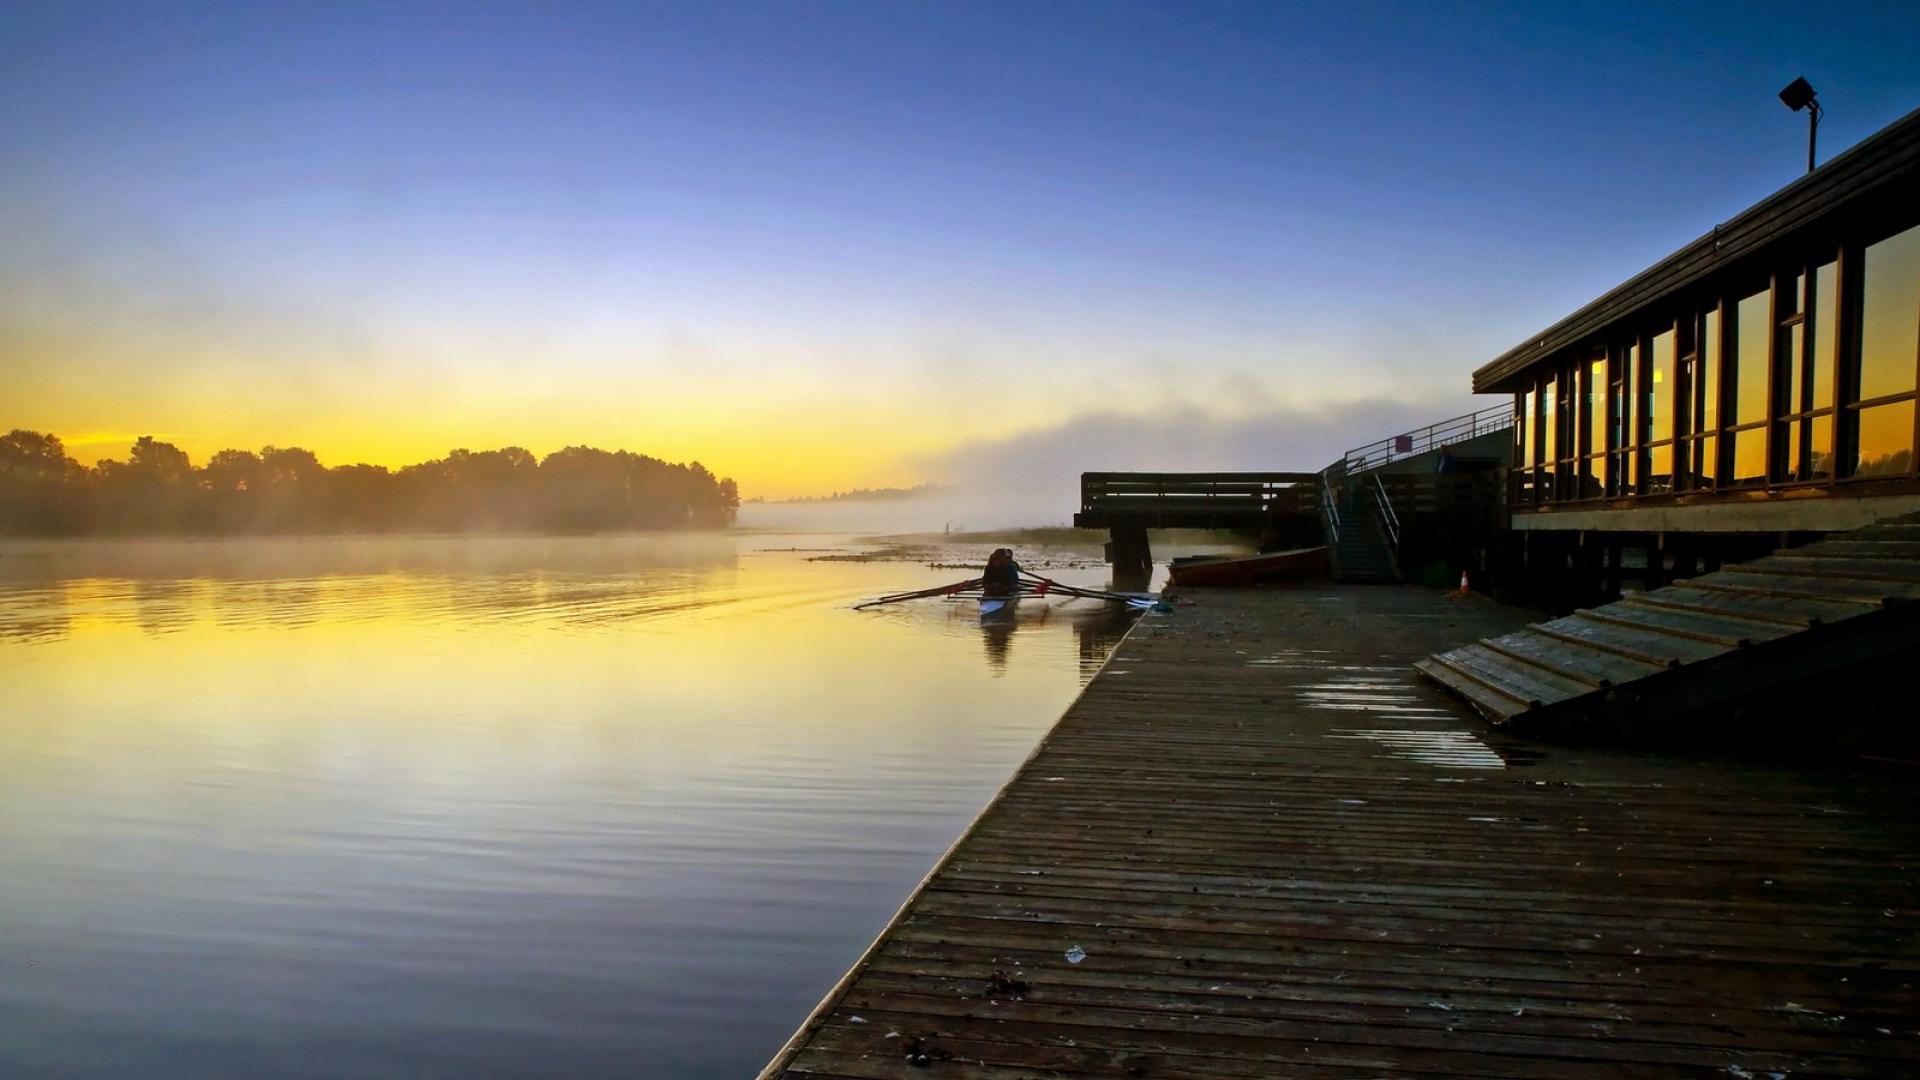 Burnaby Lake Pavillion at dusk